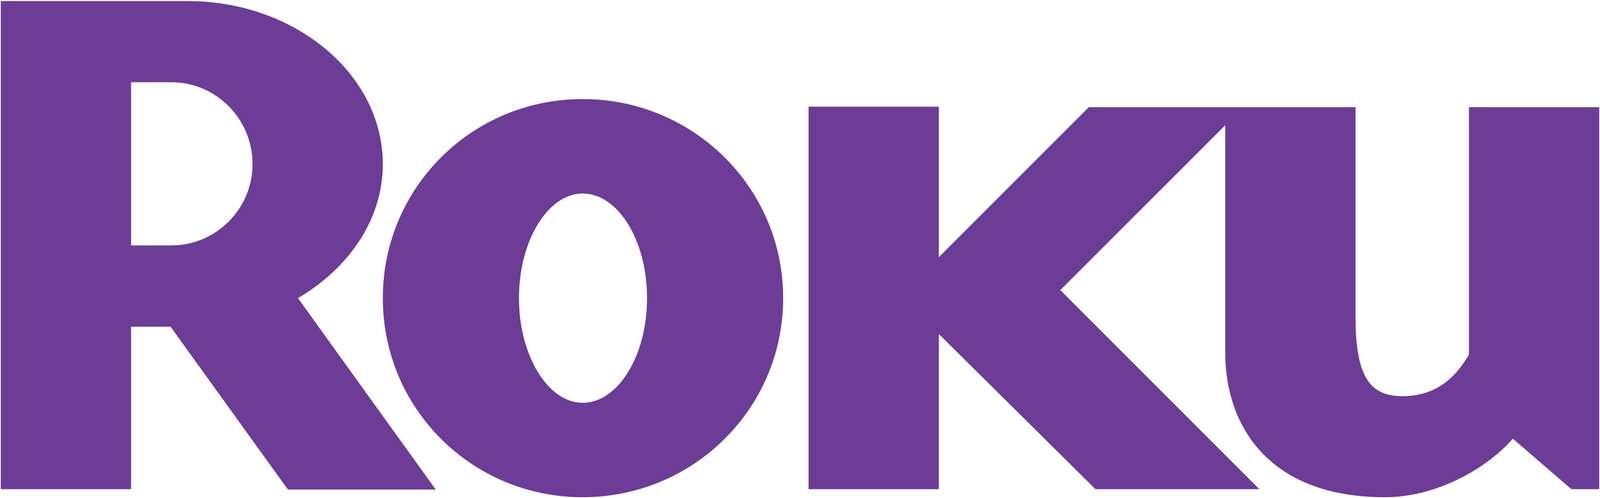 Roku-logo legpuzzel online